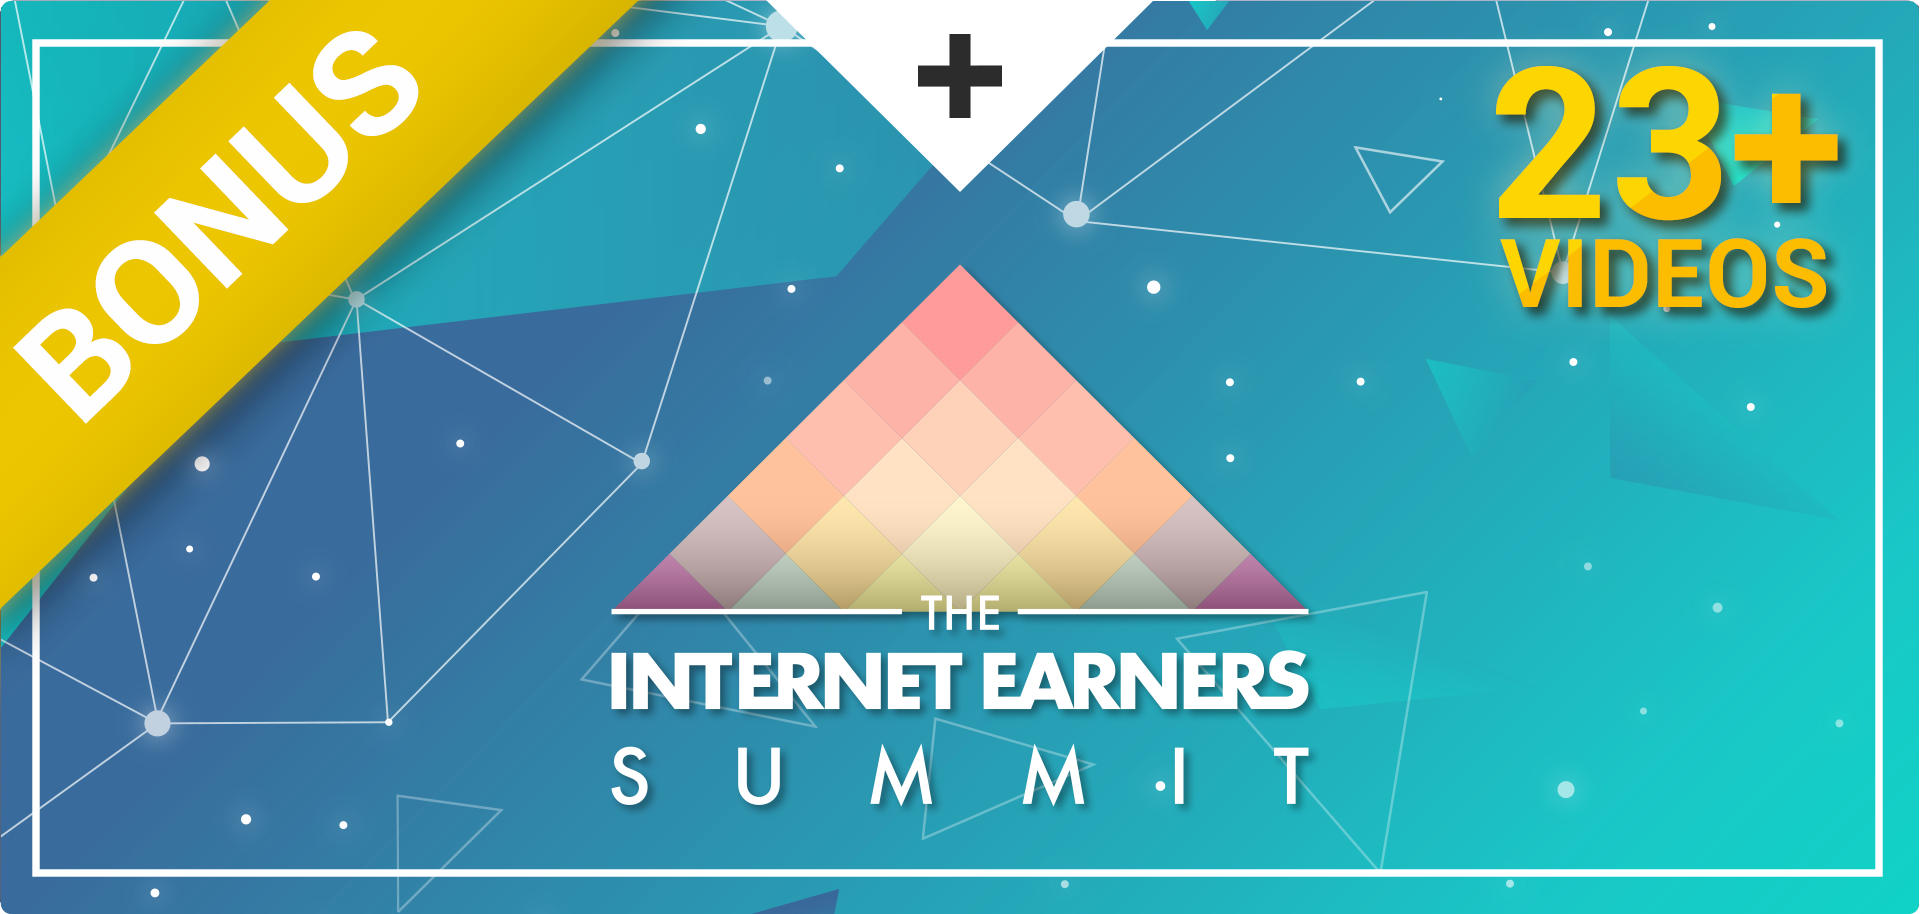 Internet Earners Summit 2017